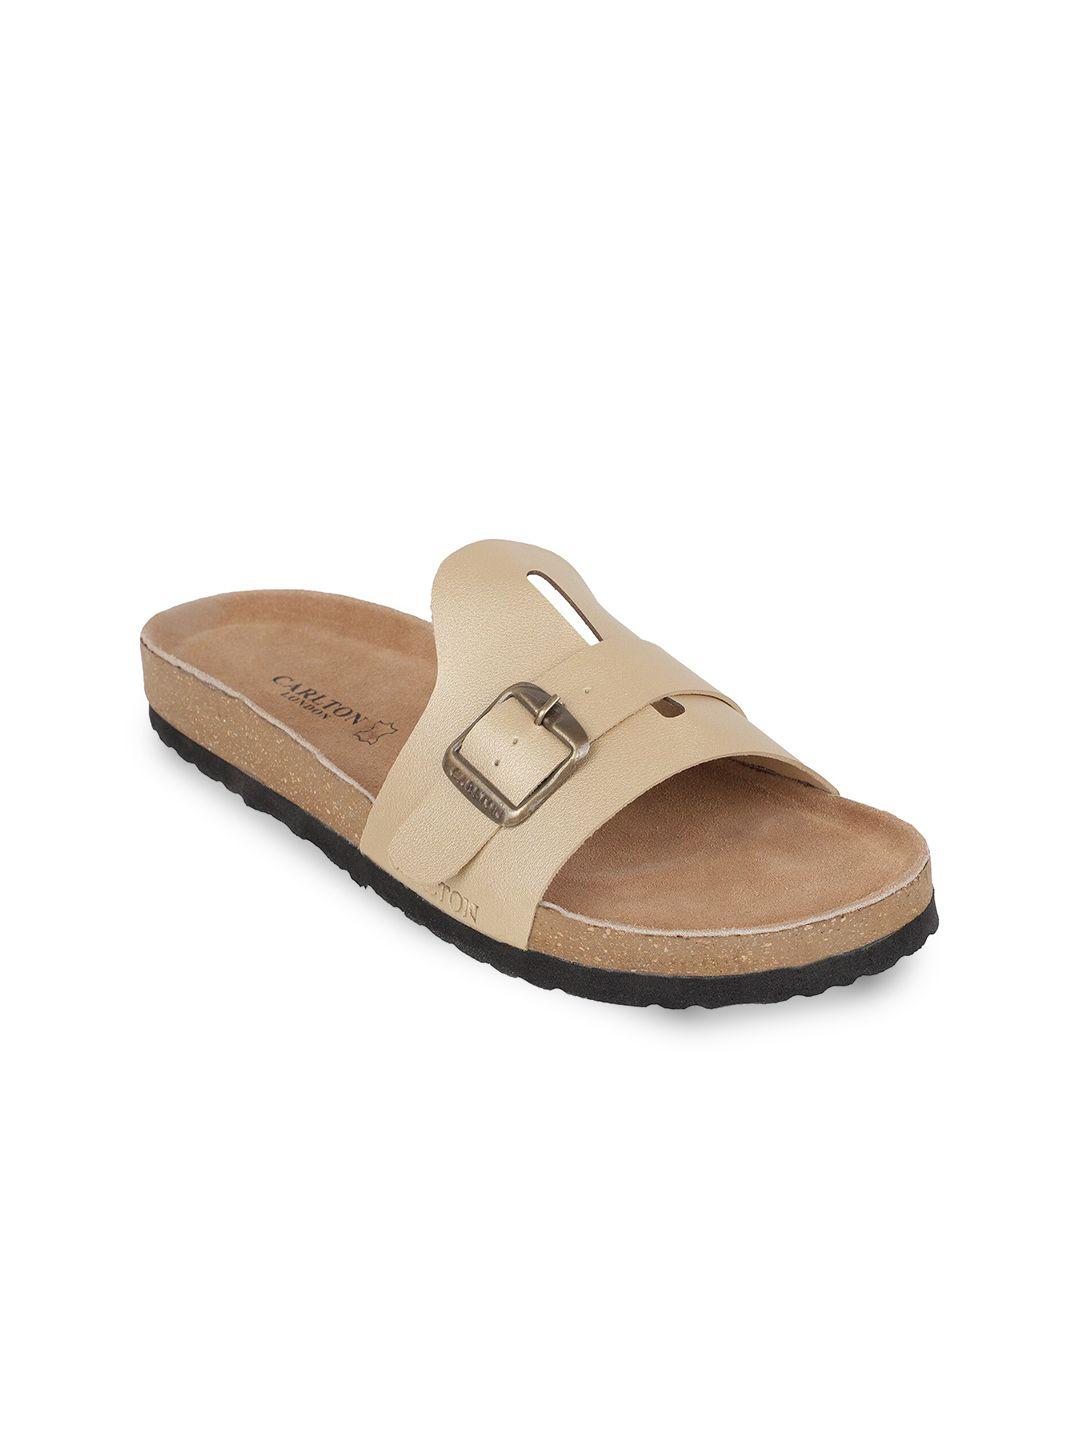 carlton-london-men-cream-comfort-sandals